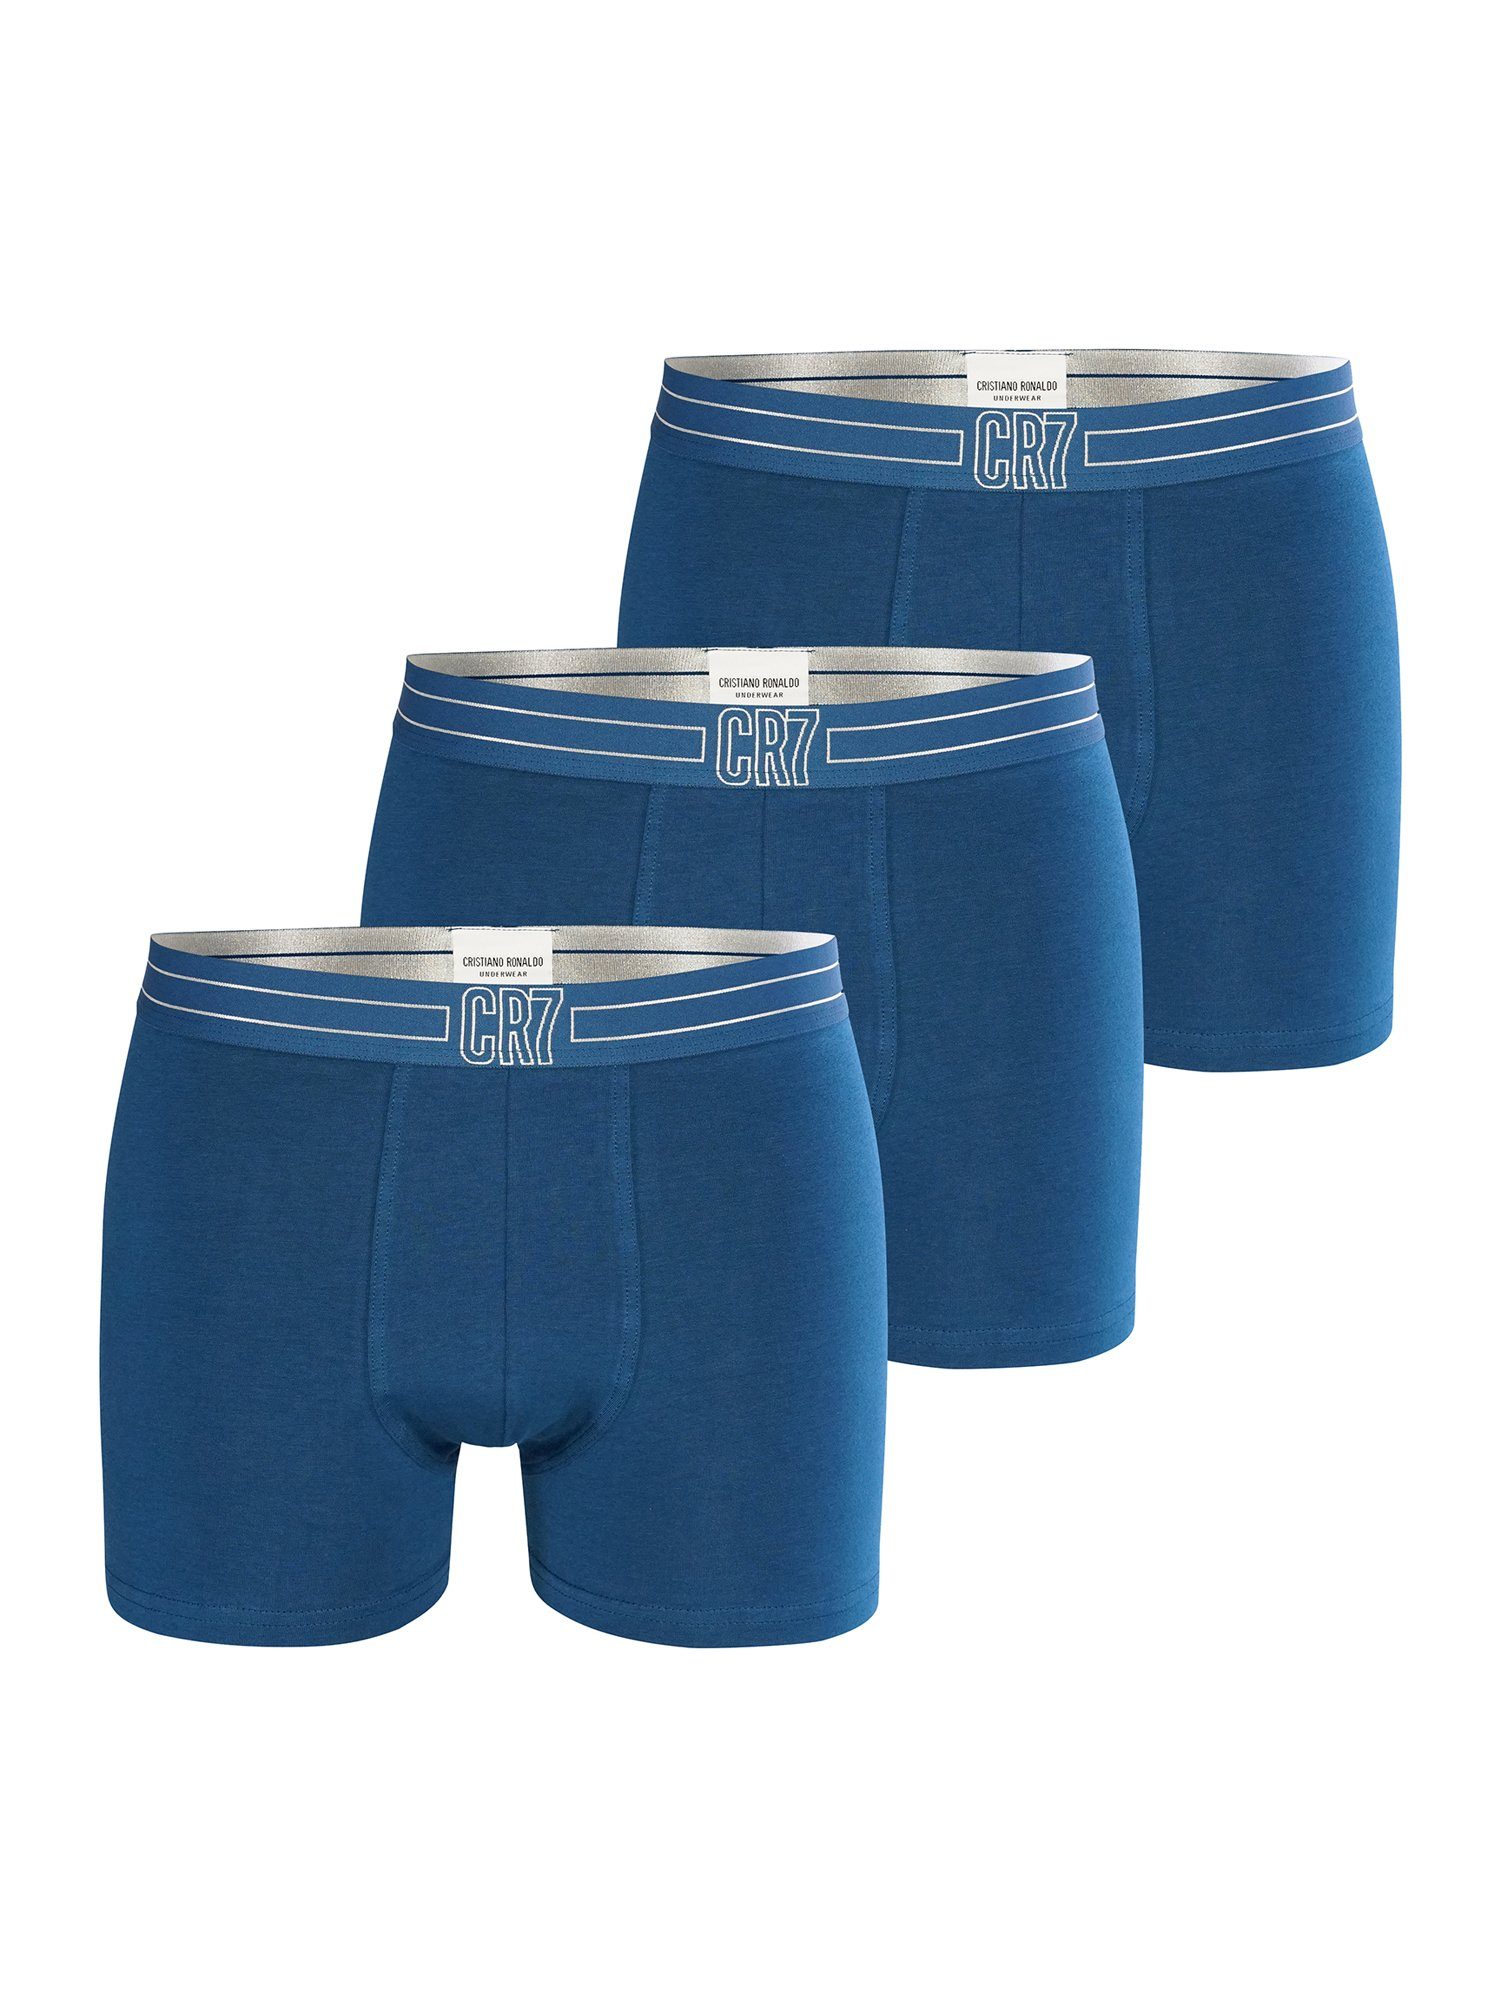 CR7 Retro Pants BASIC 3-Pack blau